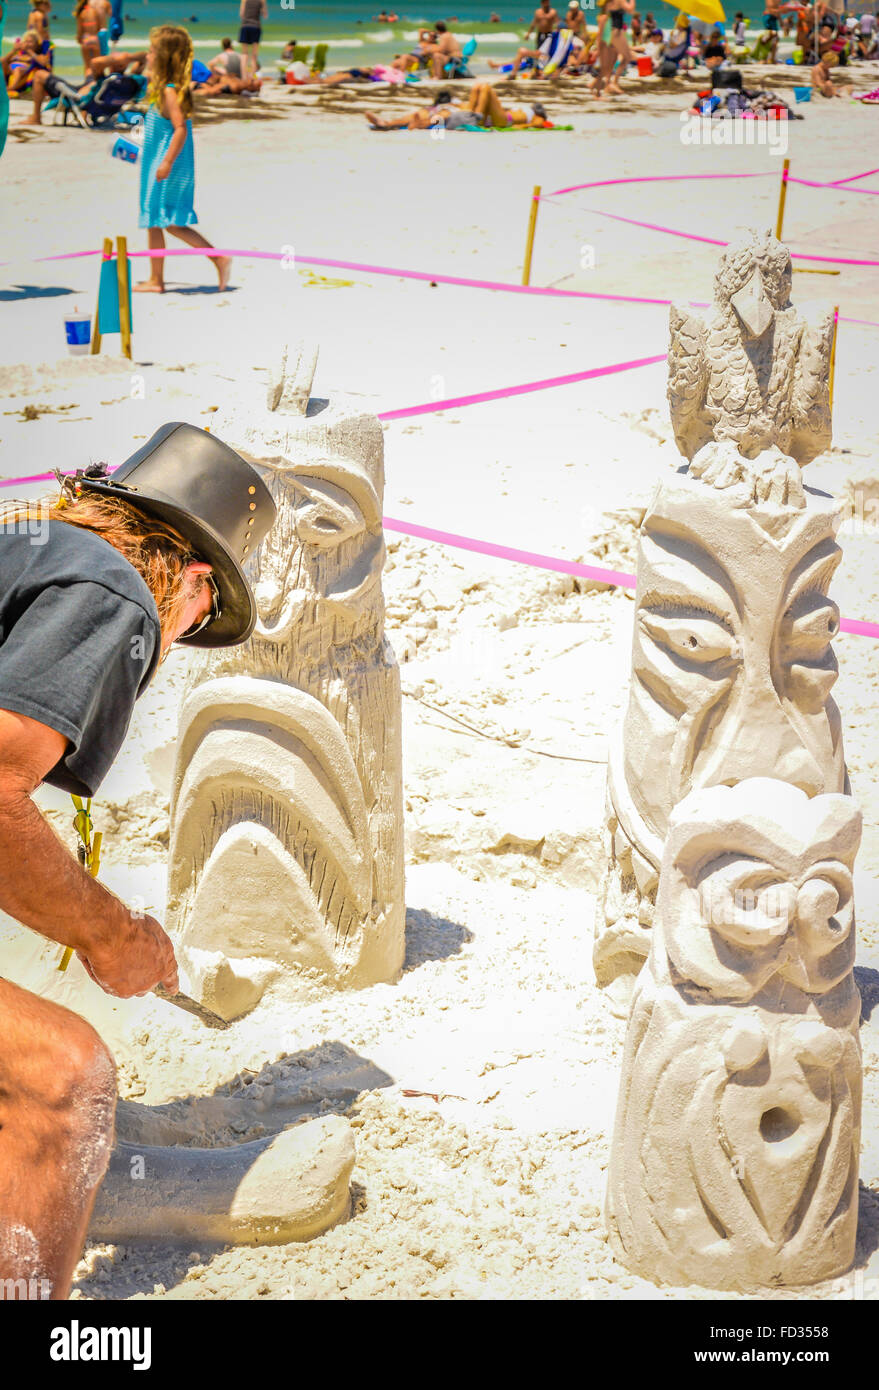 Ein Mann arbeitet auf einer aufwendigen Sandburg Konstruktion erinnert an Totempfähle während eines Wettkampfes am Siesta Key Beach, FL Stockfoto